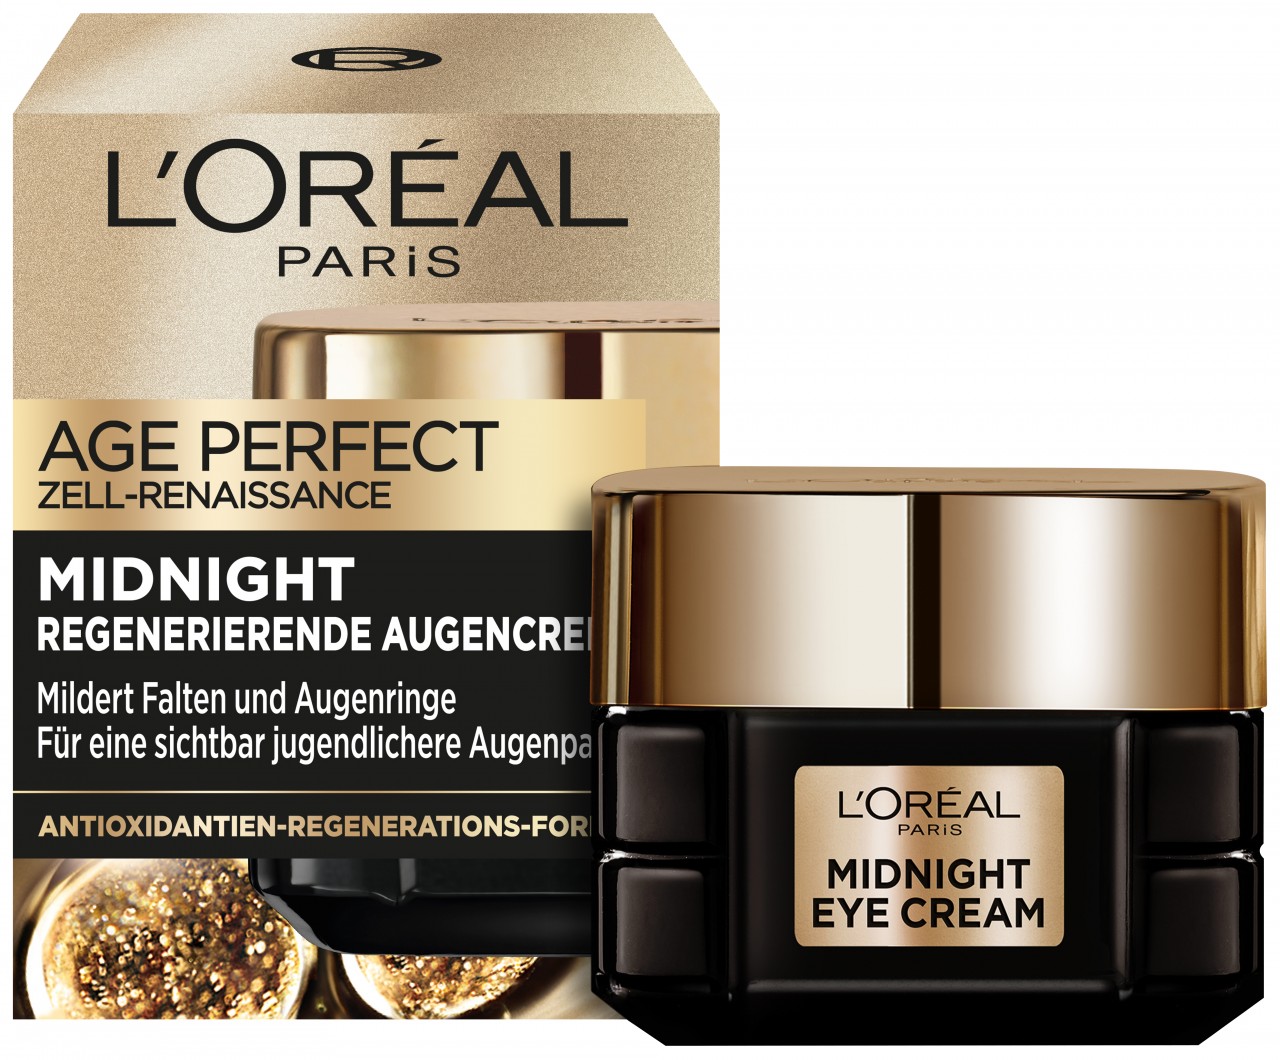 LOréal Skin Expert - Age Perfect Zell-Renaissance Midnight Augencreme von L'Oréal Paris